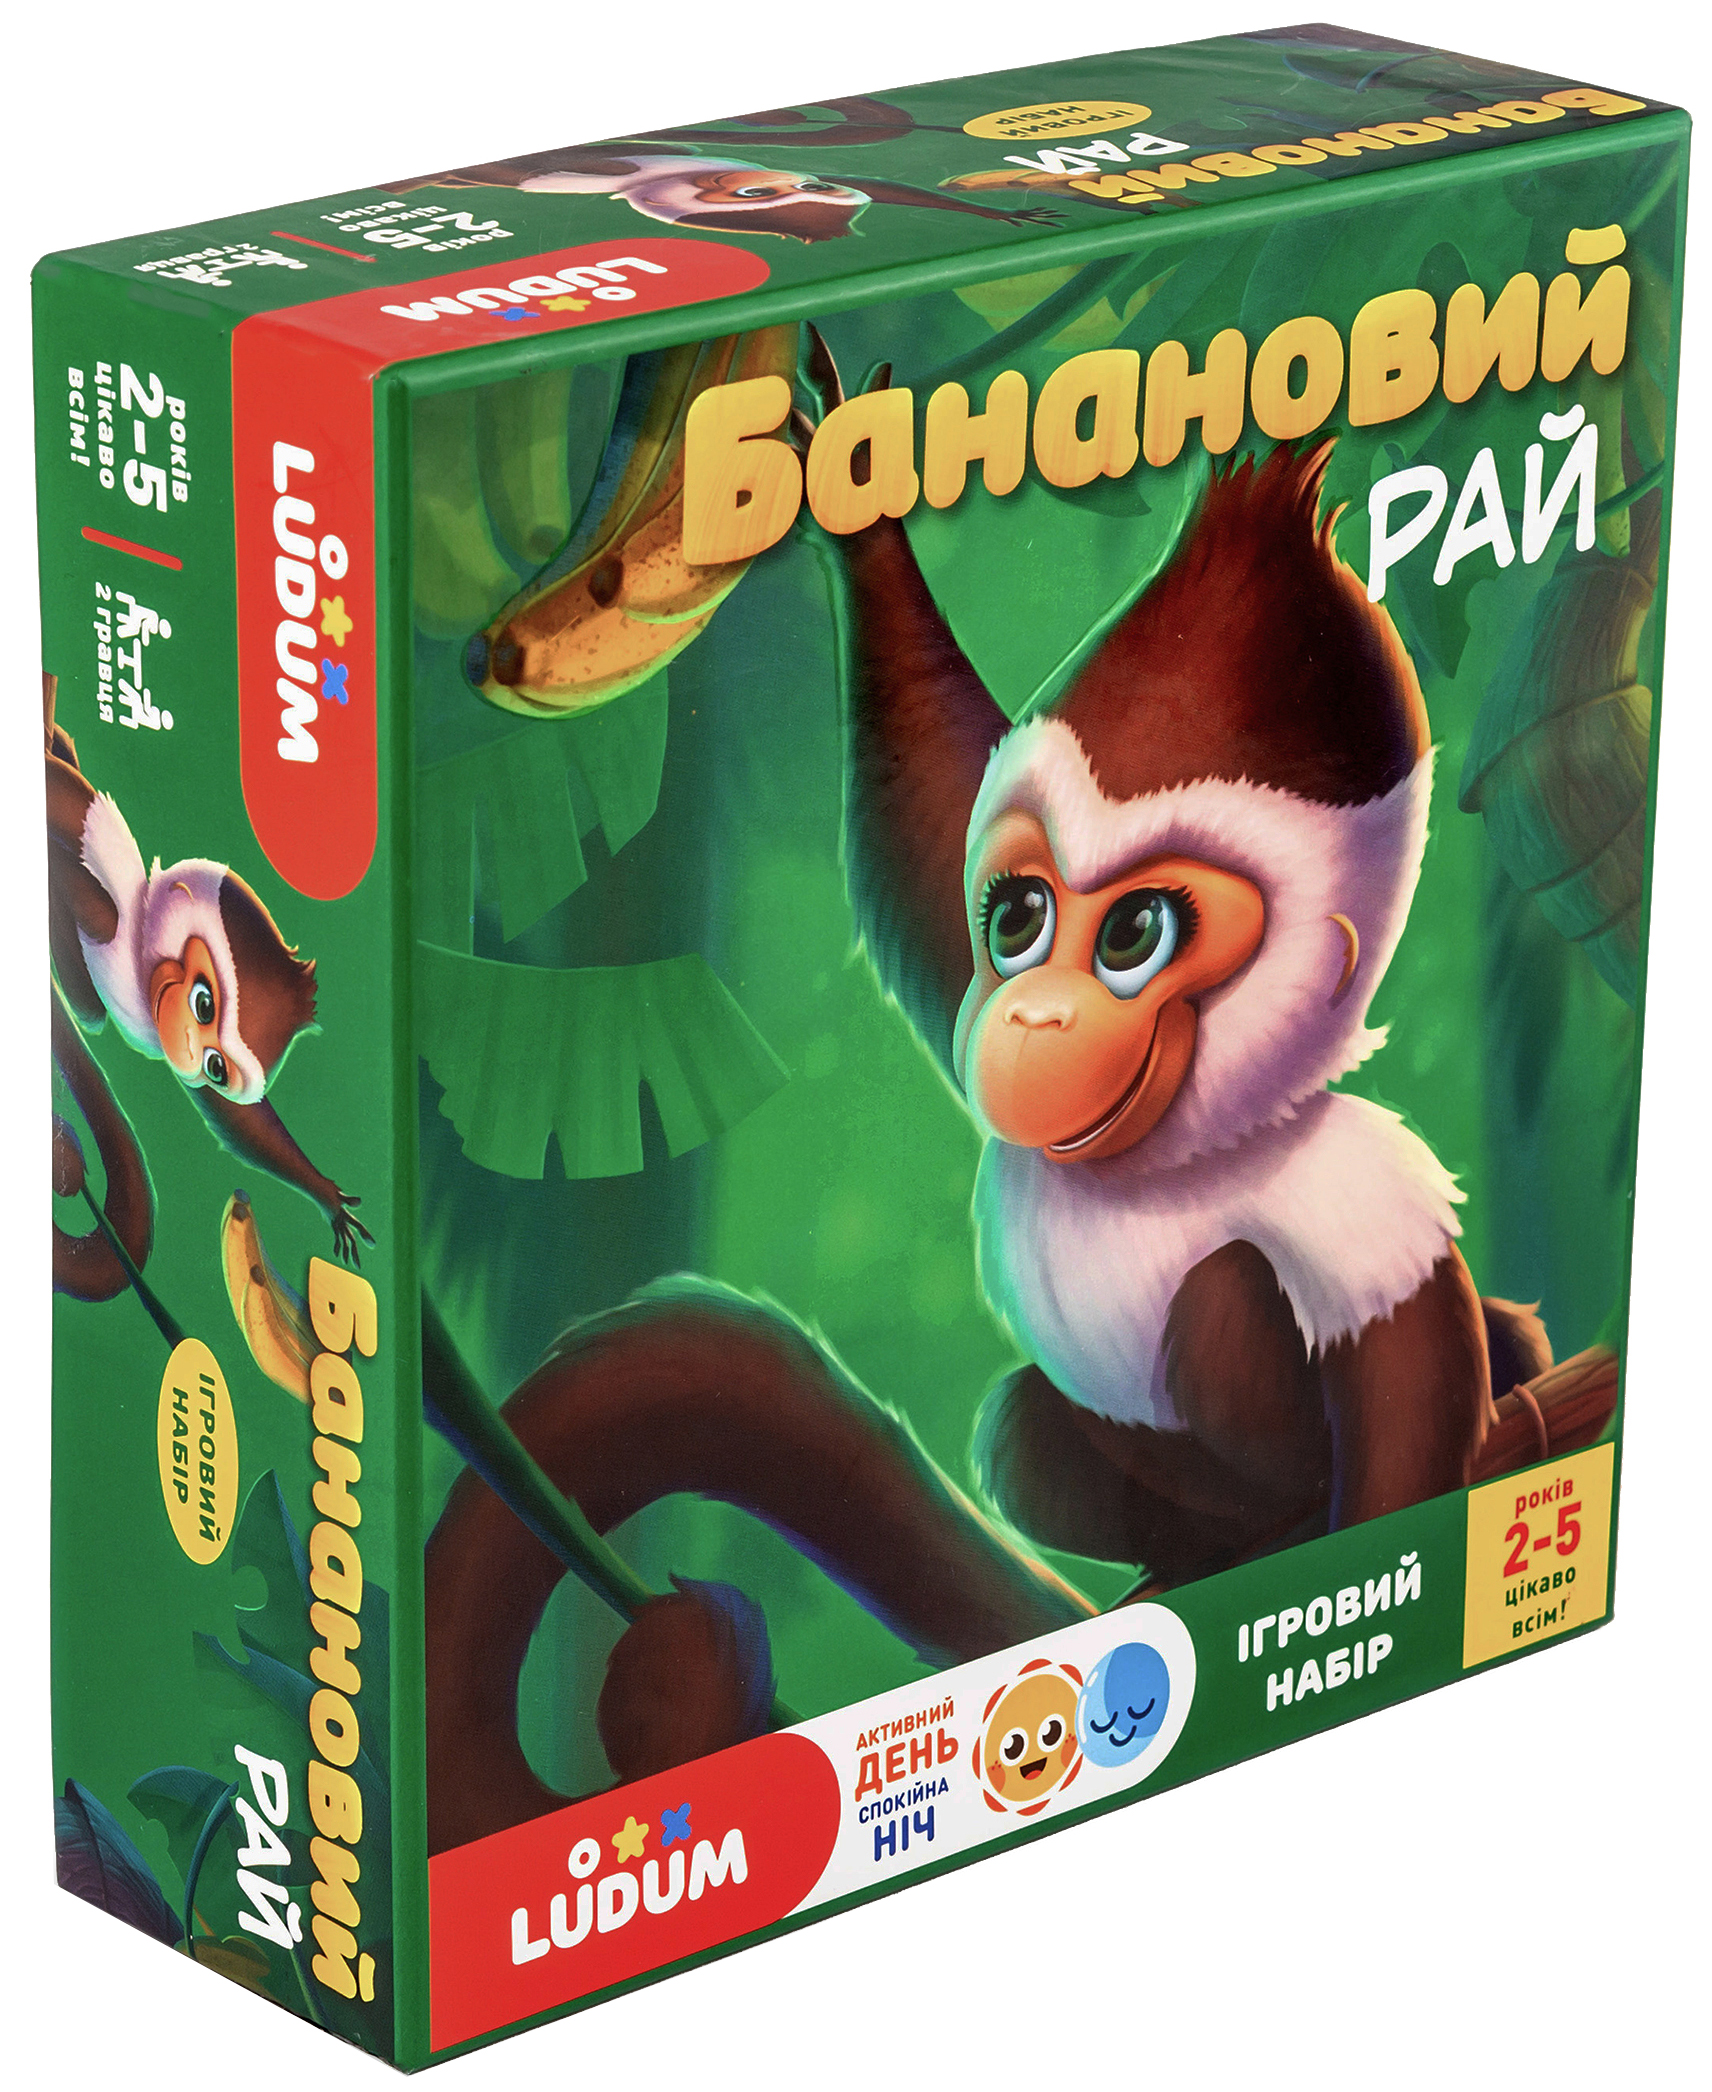 

Игровой набор Ludum Банановый рай украинский язык (игра, рассказ, аудиосказка) ( LD1046-53) (4820215151825)